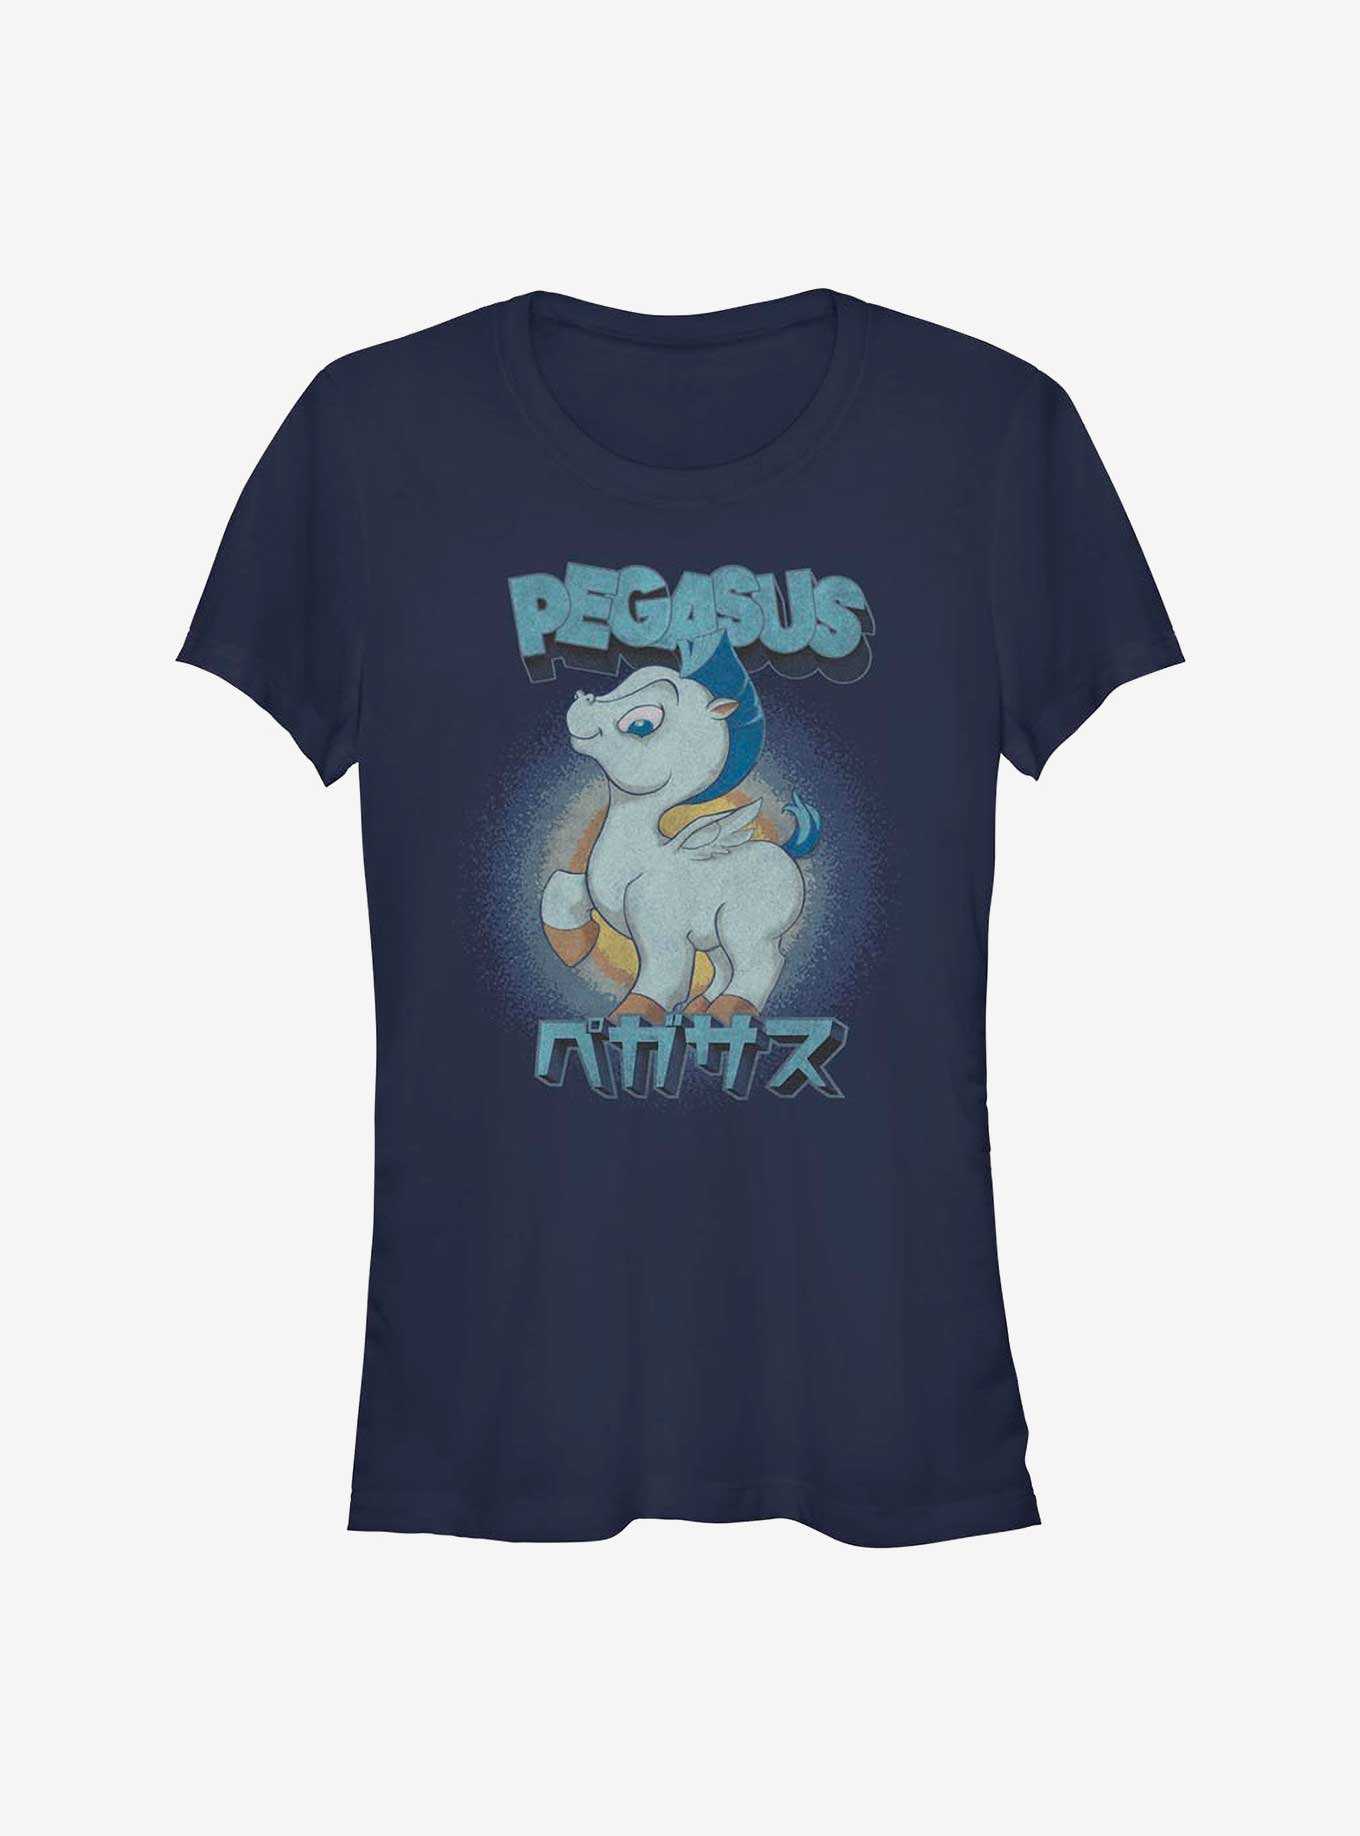 Disney Hercules Pegasus Little Wings Girls T-Shirt, , hi-res